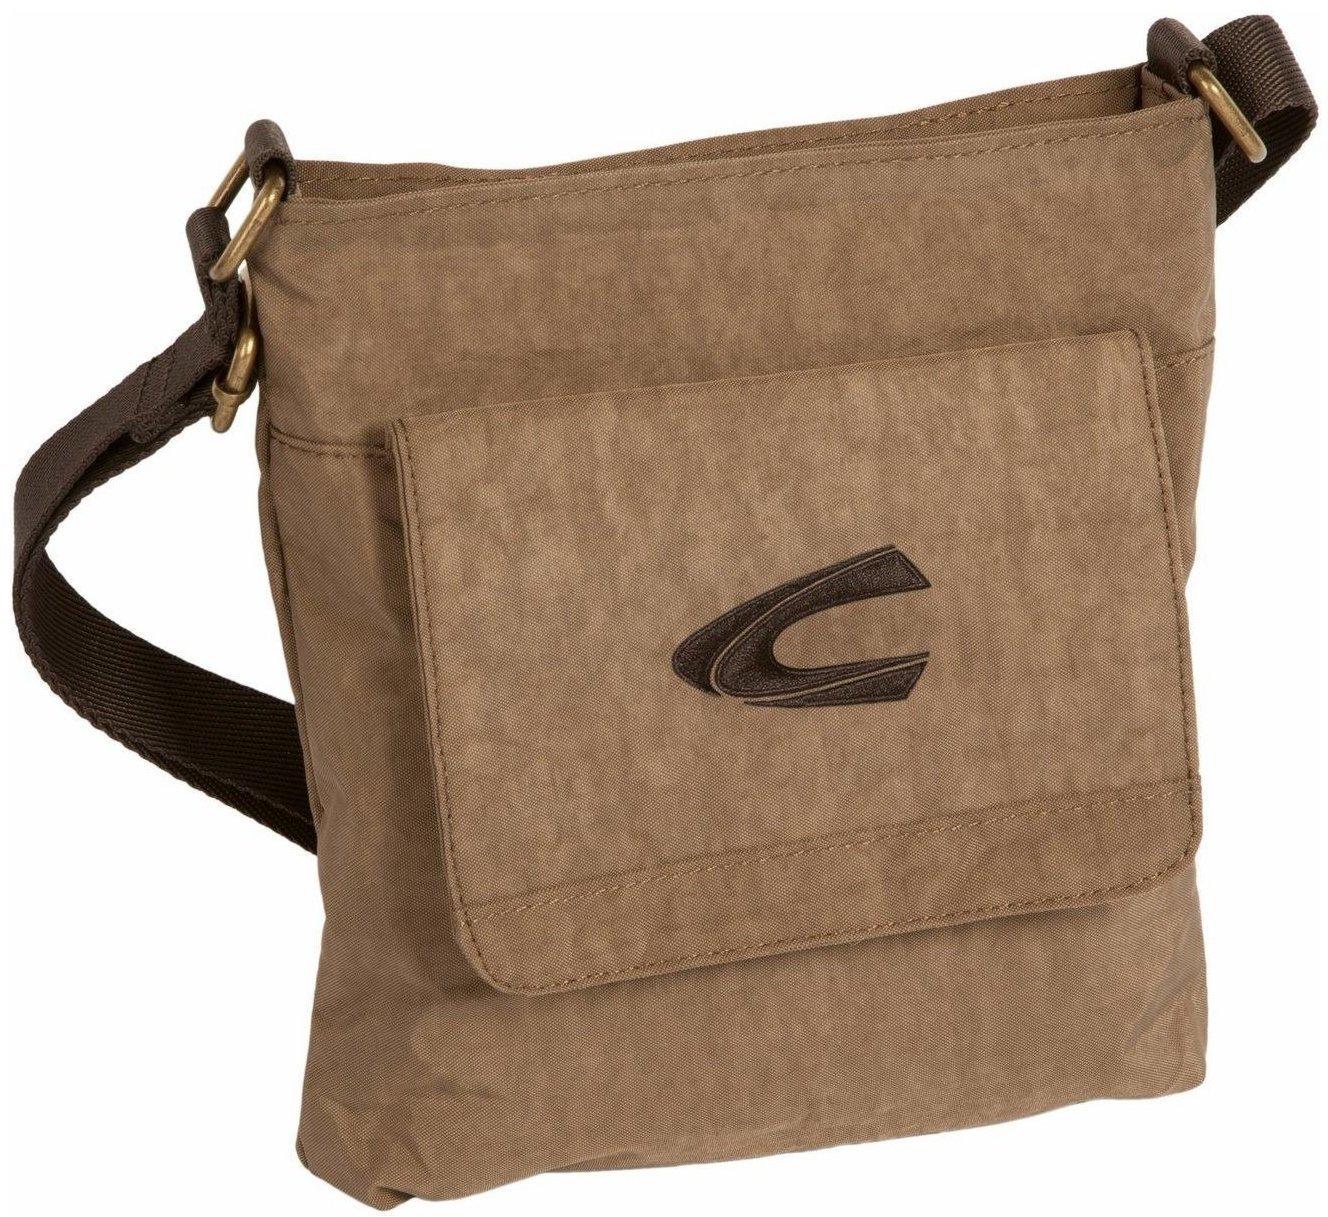 Camel Active Journey Messenger Bag Tasche Umhängetasche Brown Braun Überschlag 